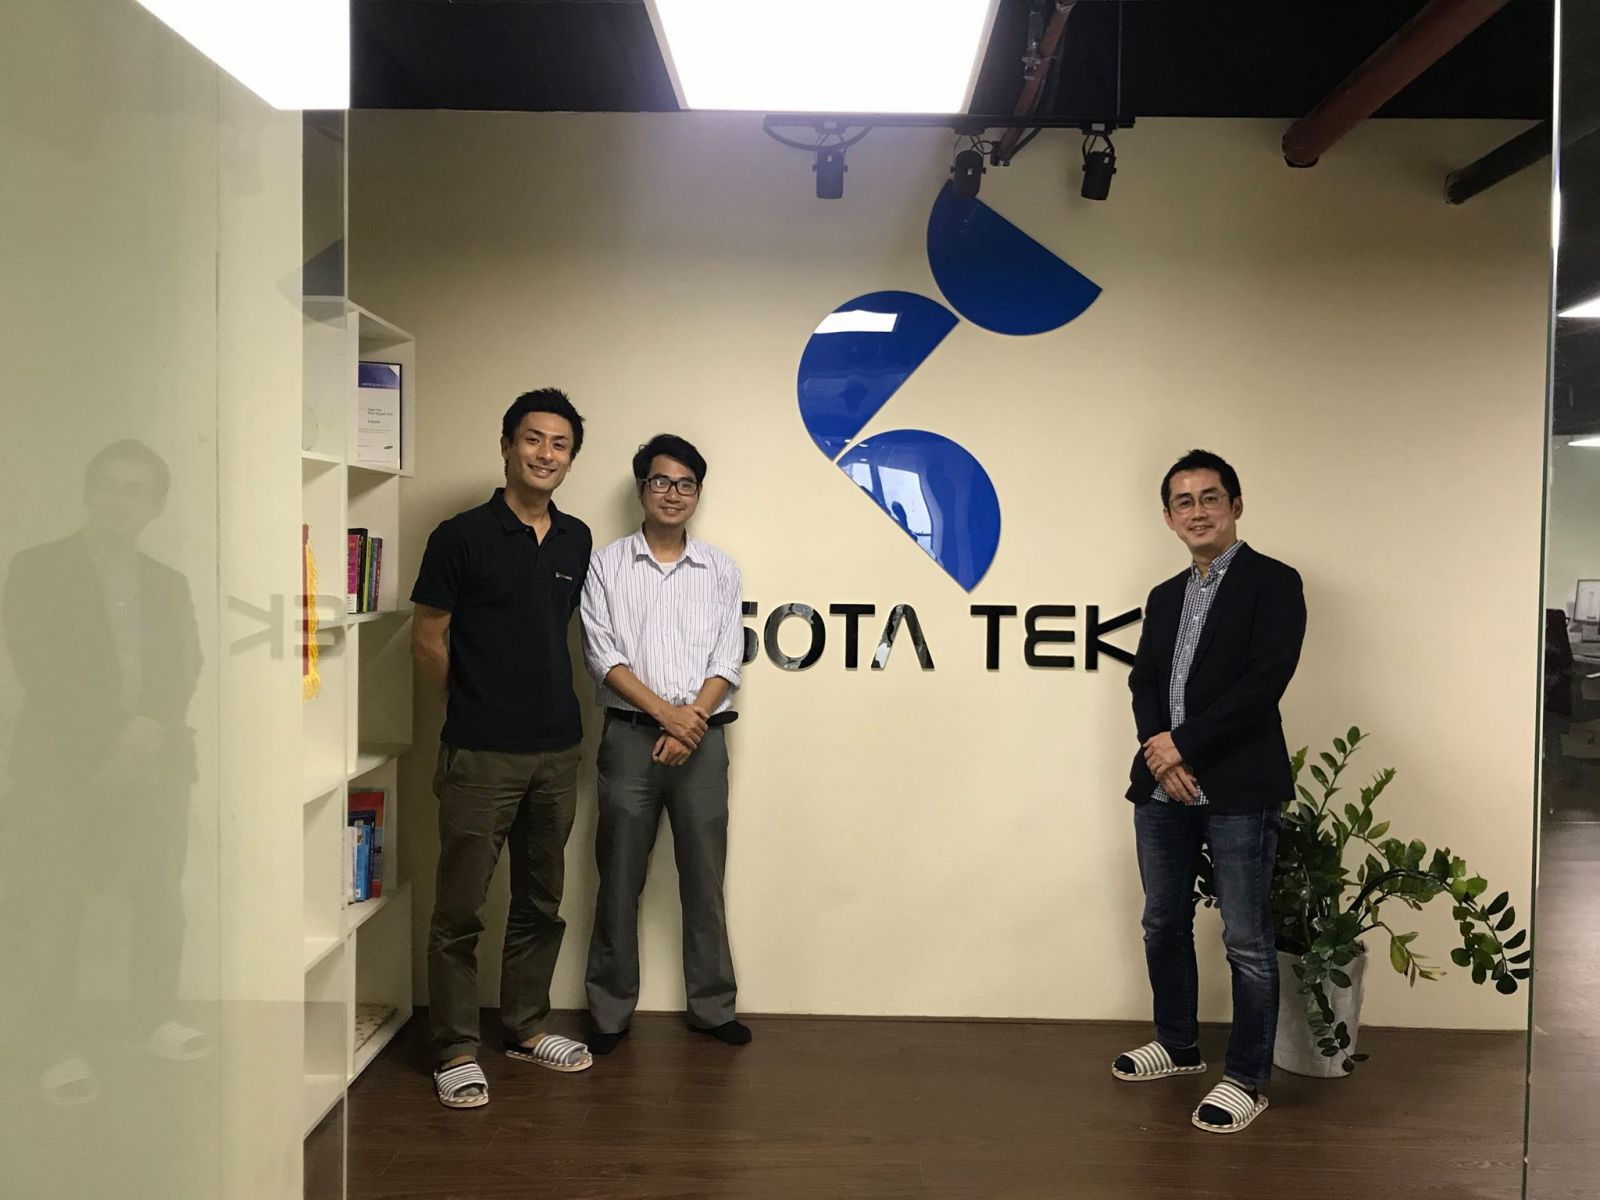 Chatwork representatives visit Sotatek's office